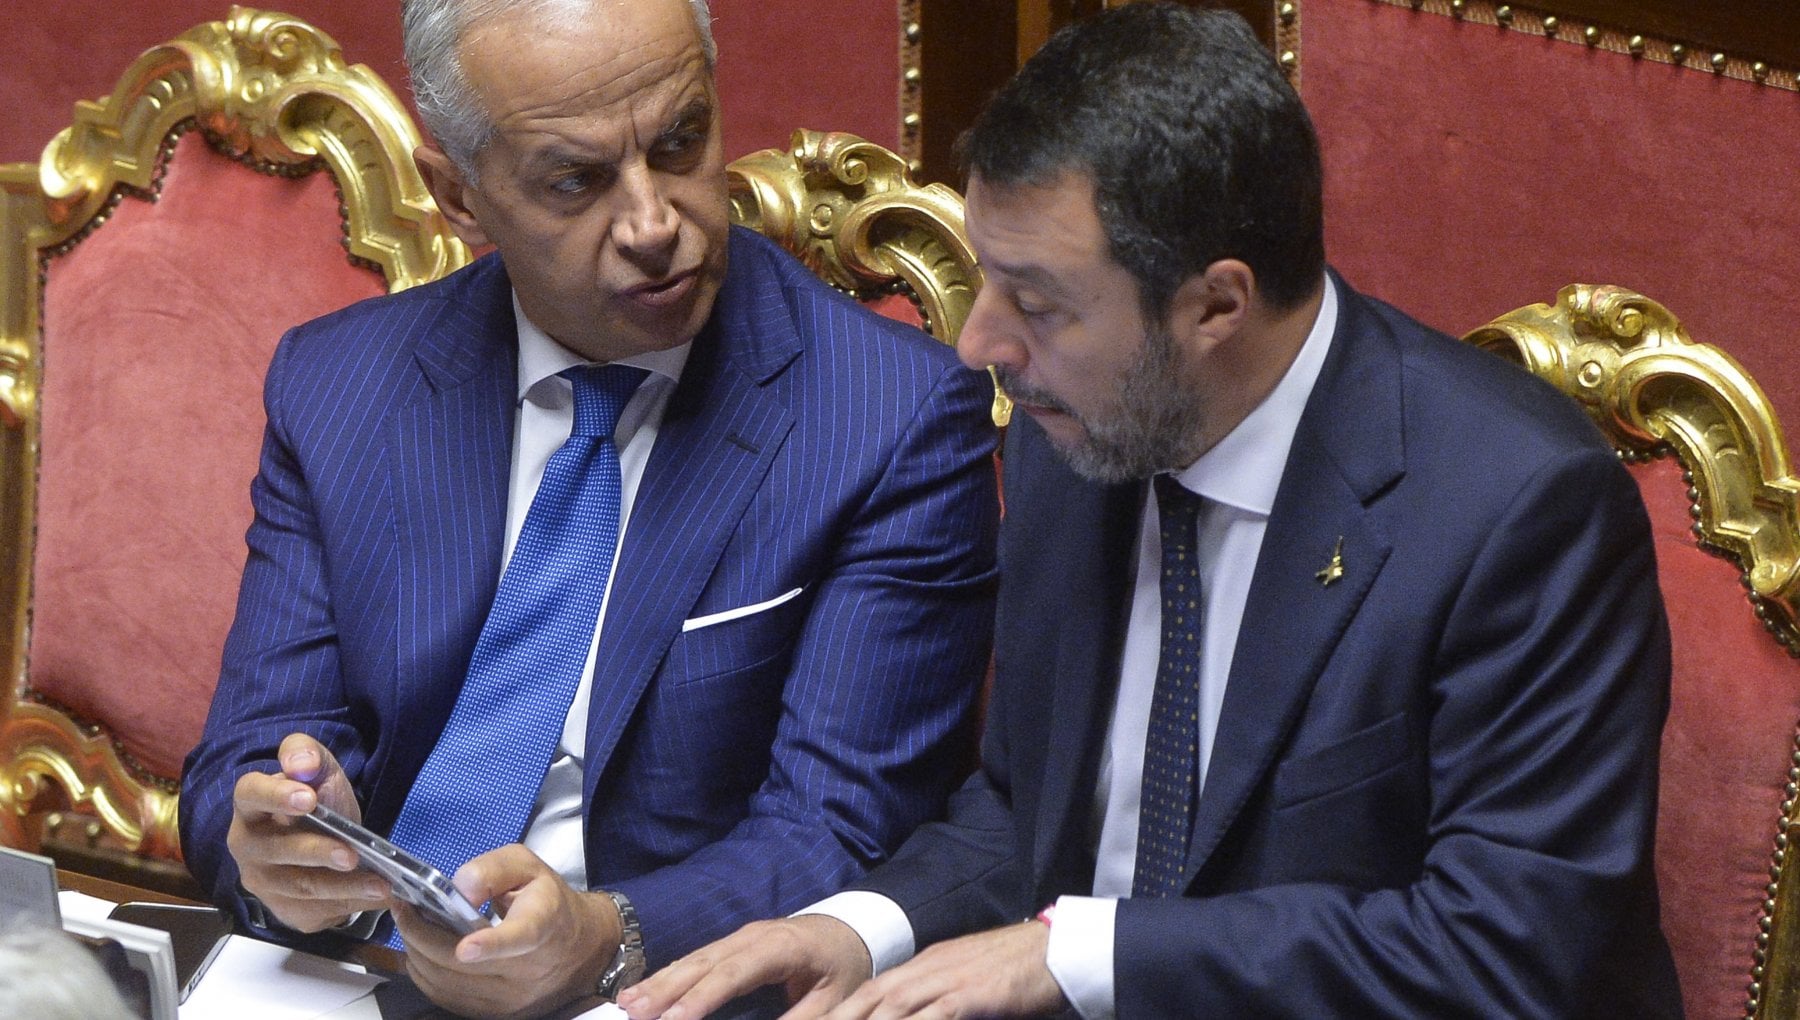 Naufragio, Salvini peggio di Piantedosi: "Volgare buttare in politica i morti"